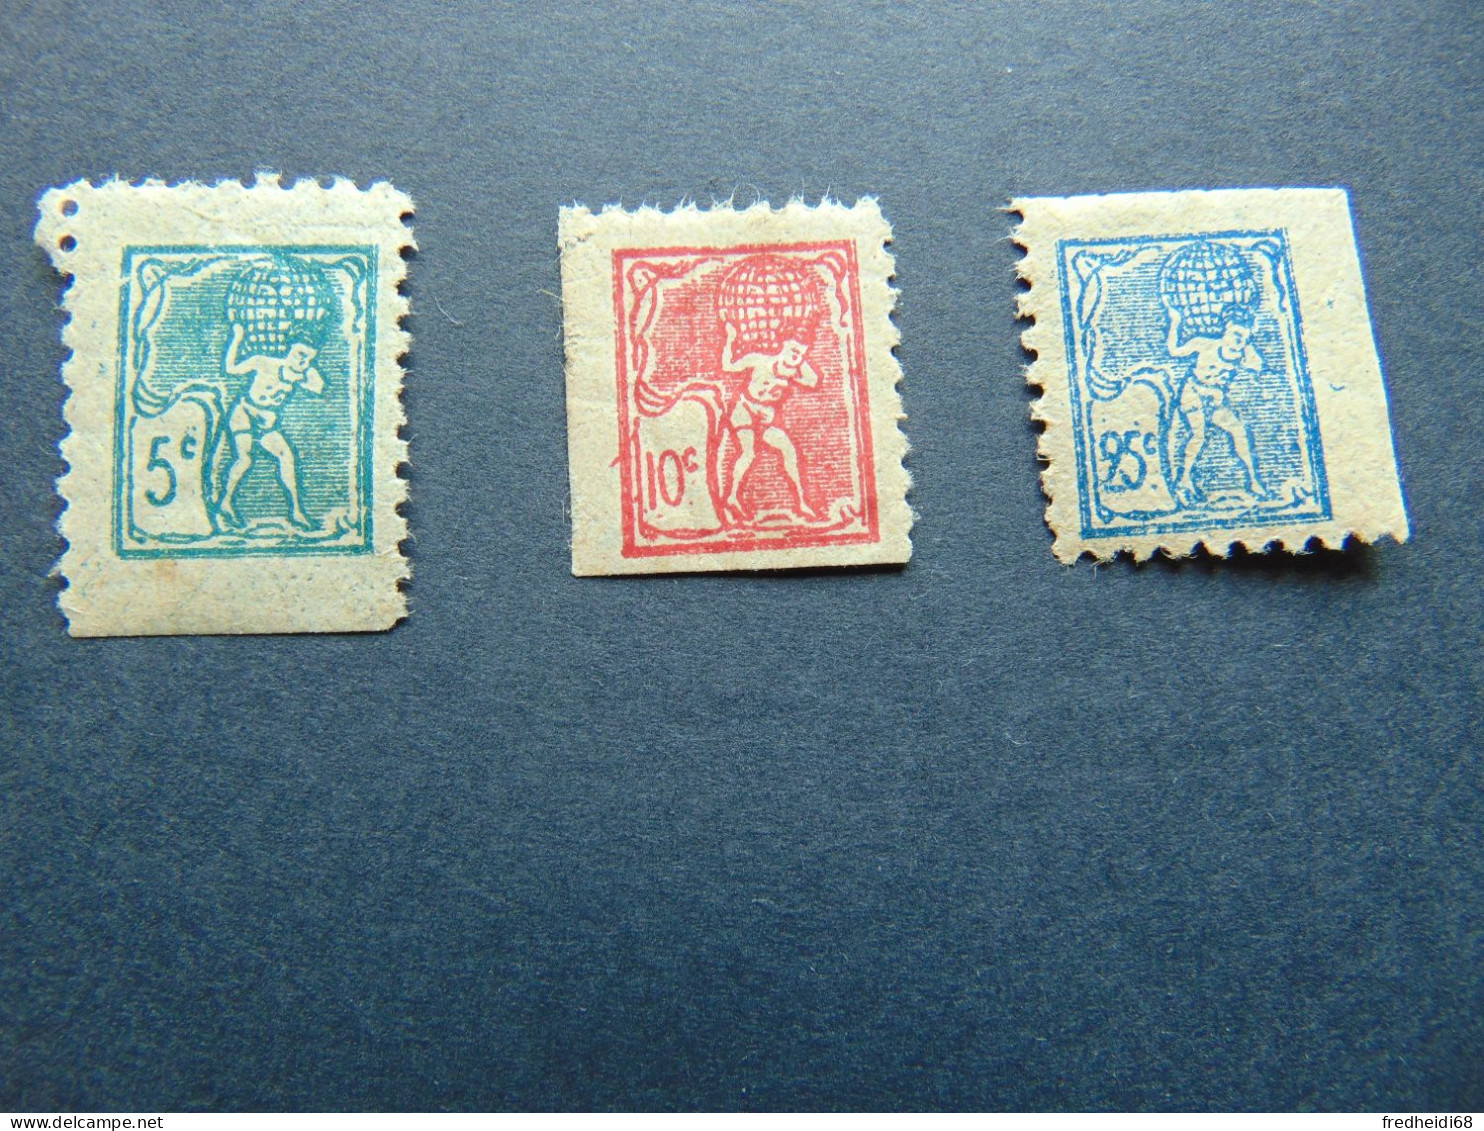 Très Beaux Timbres De Poste Enfantine De La Fin Du 19ème Siècle Représentant Le Géant Atlas - 3 Valeurs - Unused Stamps